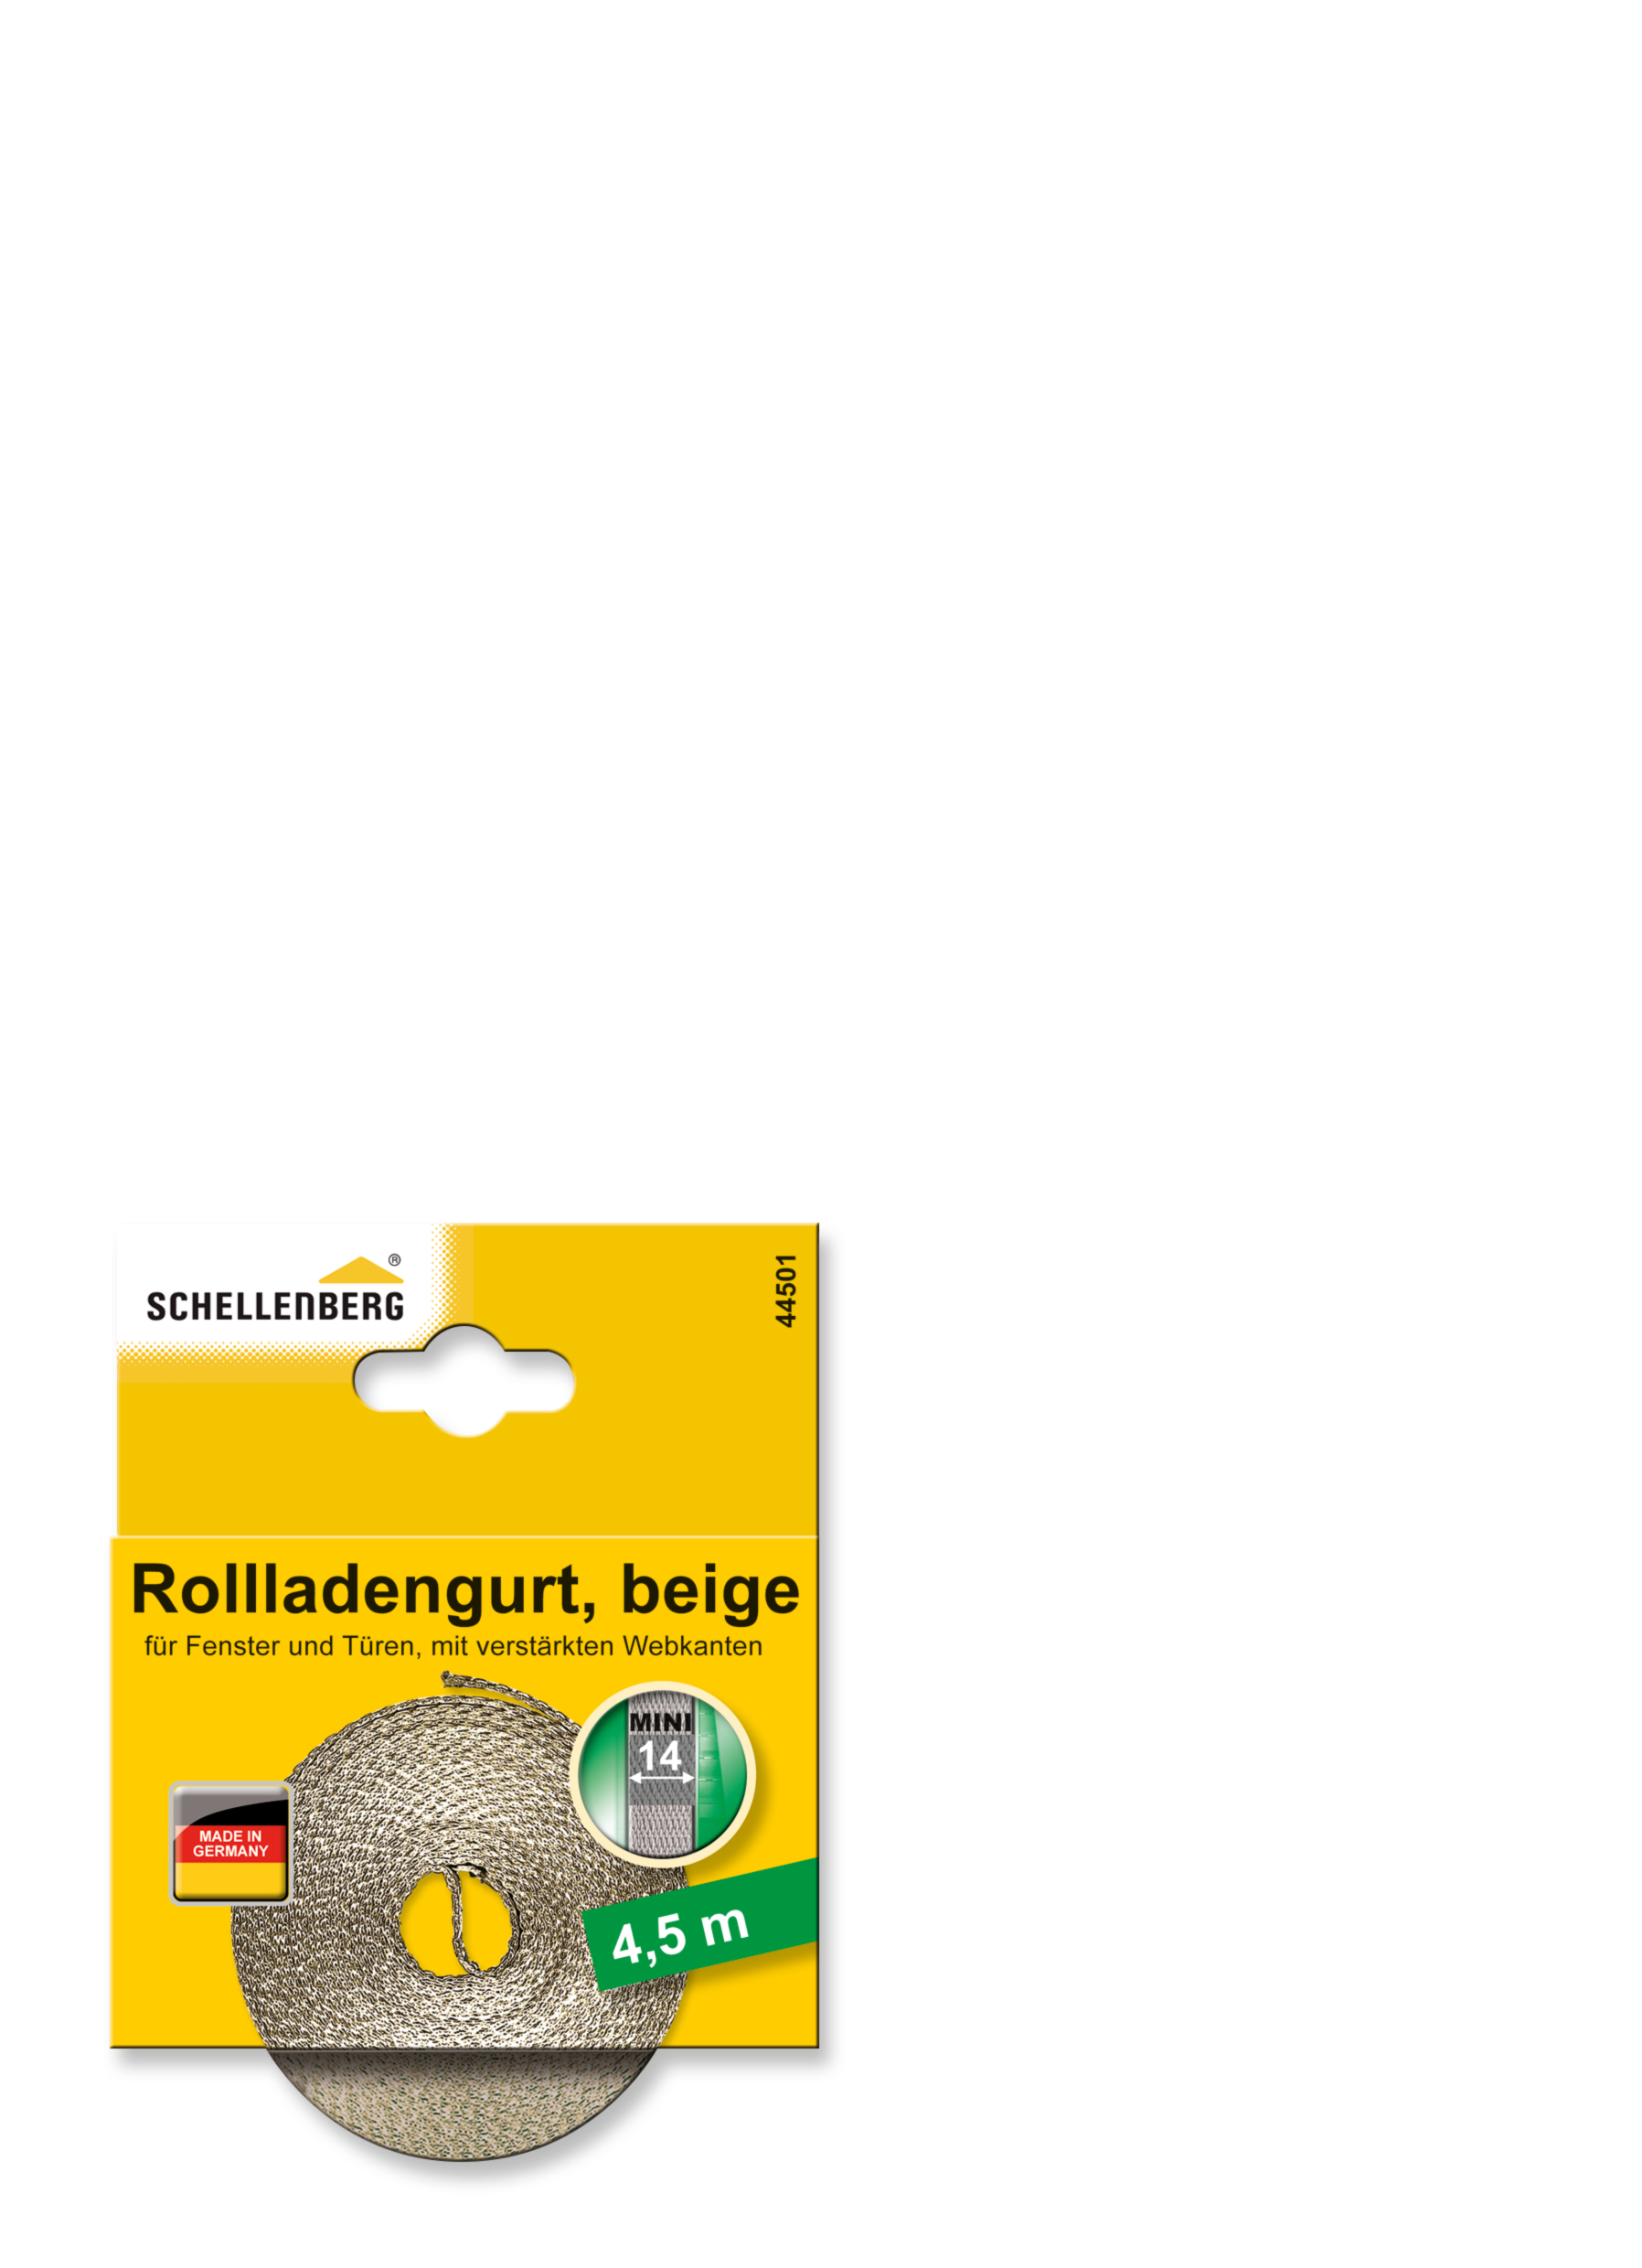 SCHELLENBERG Rollladengurt 14 mm/4,5 m beige 